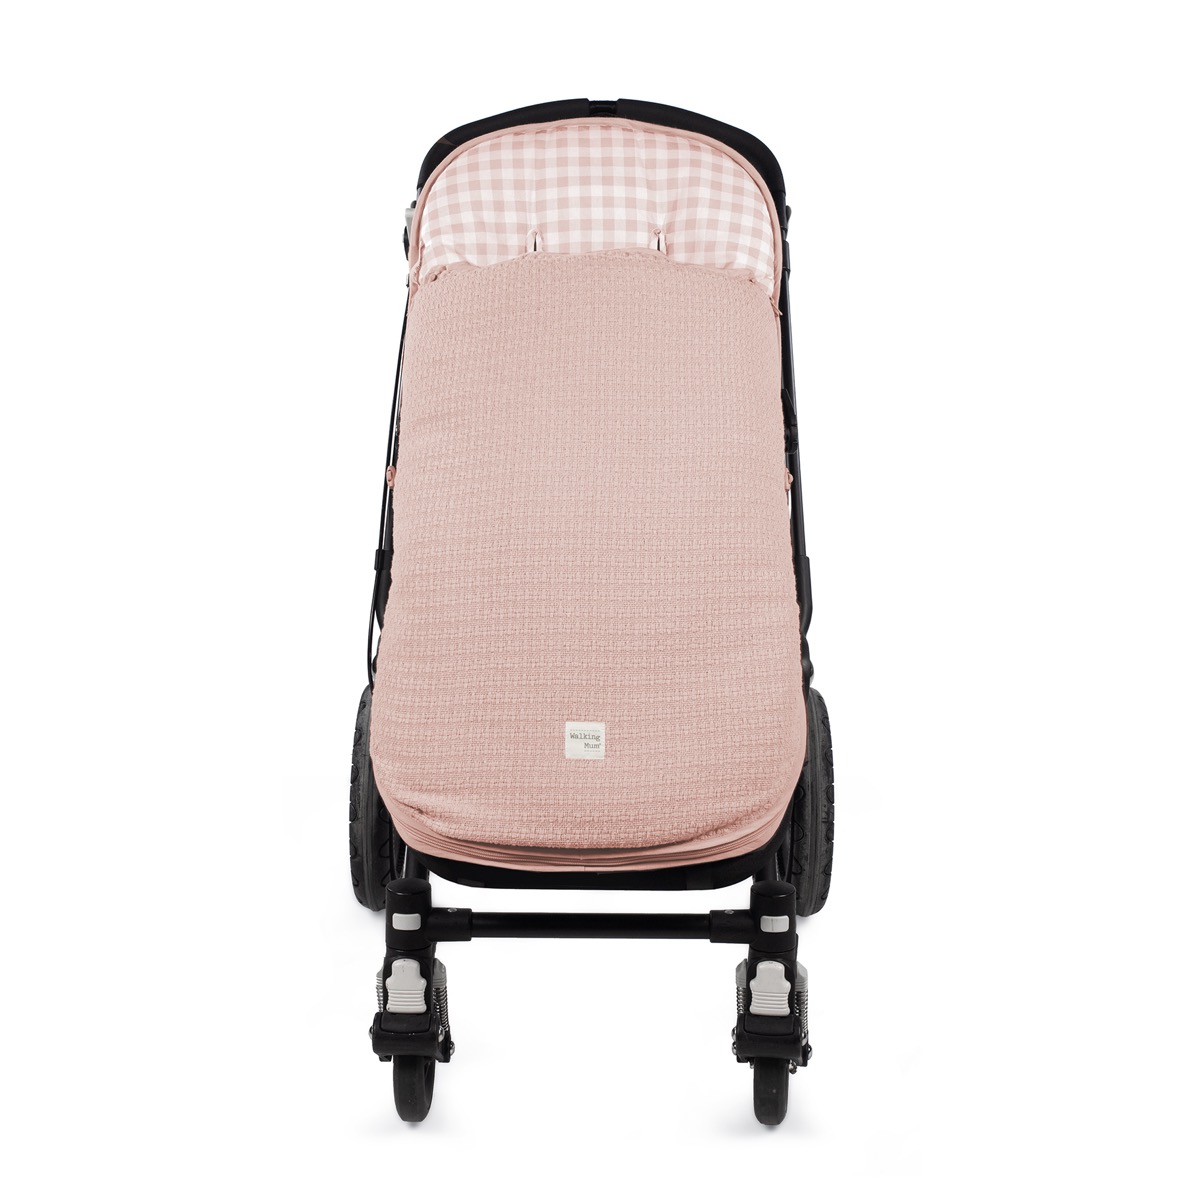 Saco Capazo Verano Colcha Desenfundable Caramelo Rosa [saco-capazo-verano-colcha-desenf]  - 78,65€ : Sacos silla paseo, Fundas para silla bebe